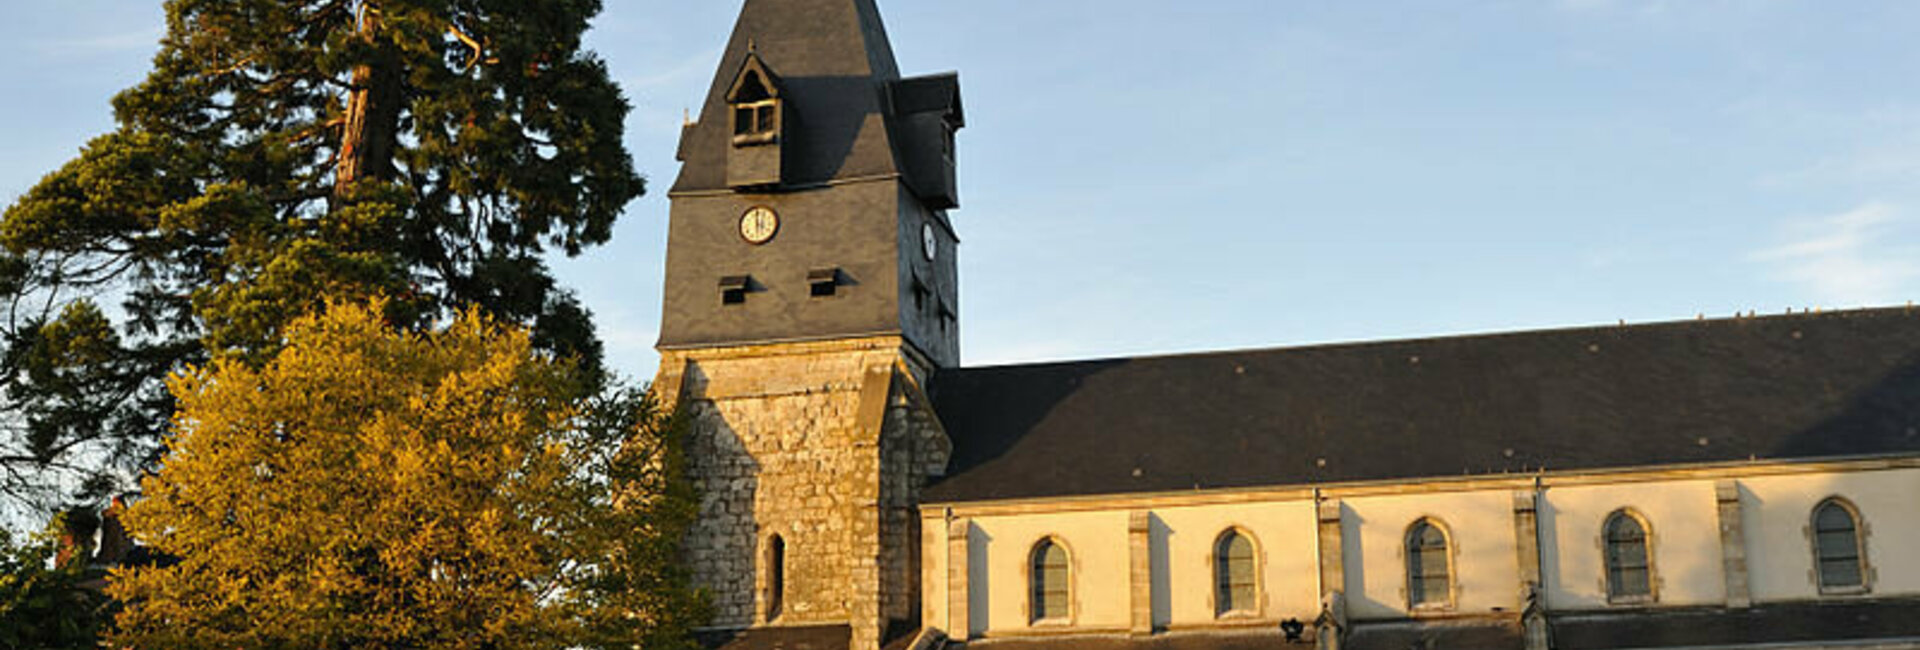 Contacter en ligne la Mairie de Aschères-le-Marché (45) Loiret